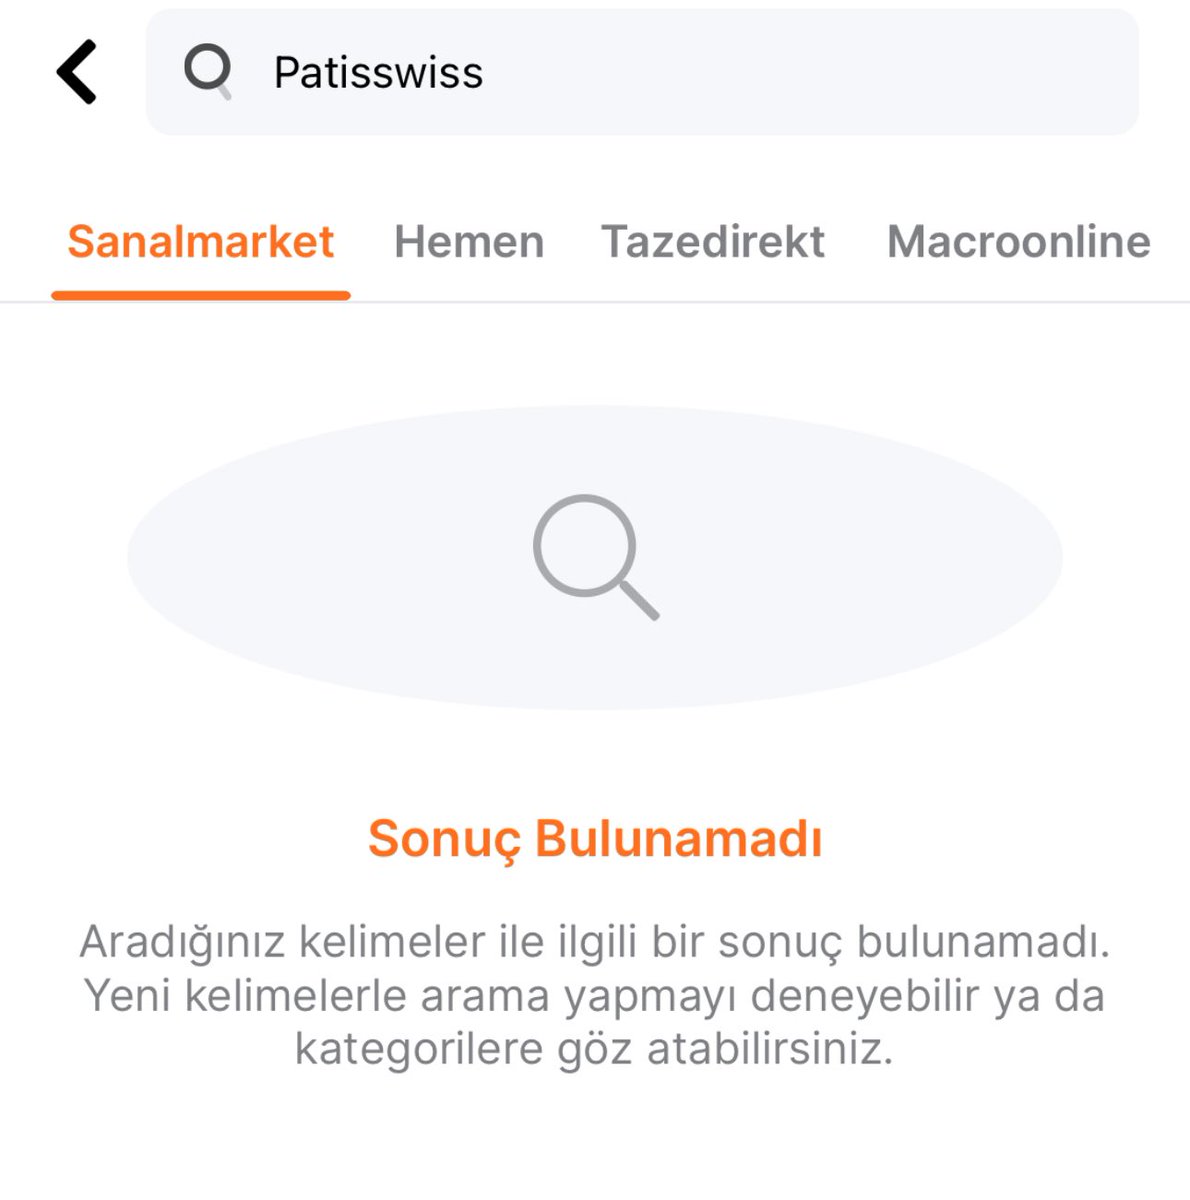 Patisswiss ürünleri Migros Mobil uygulamasından da kaldırıldı.